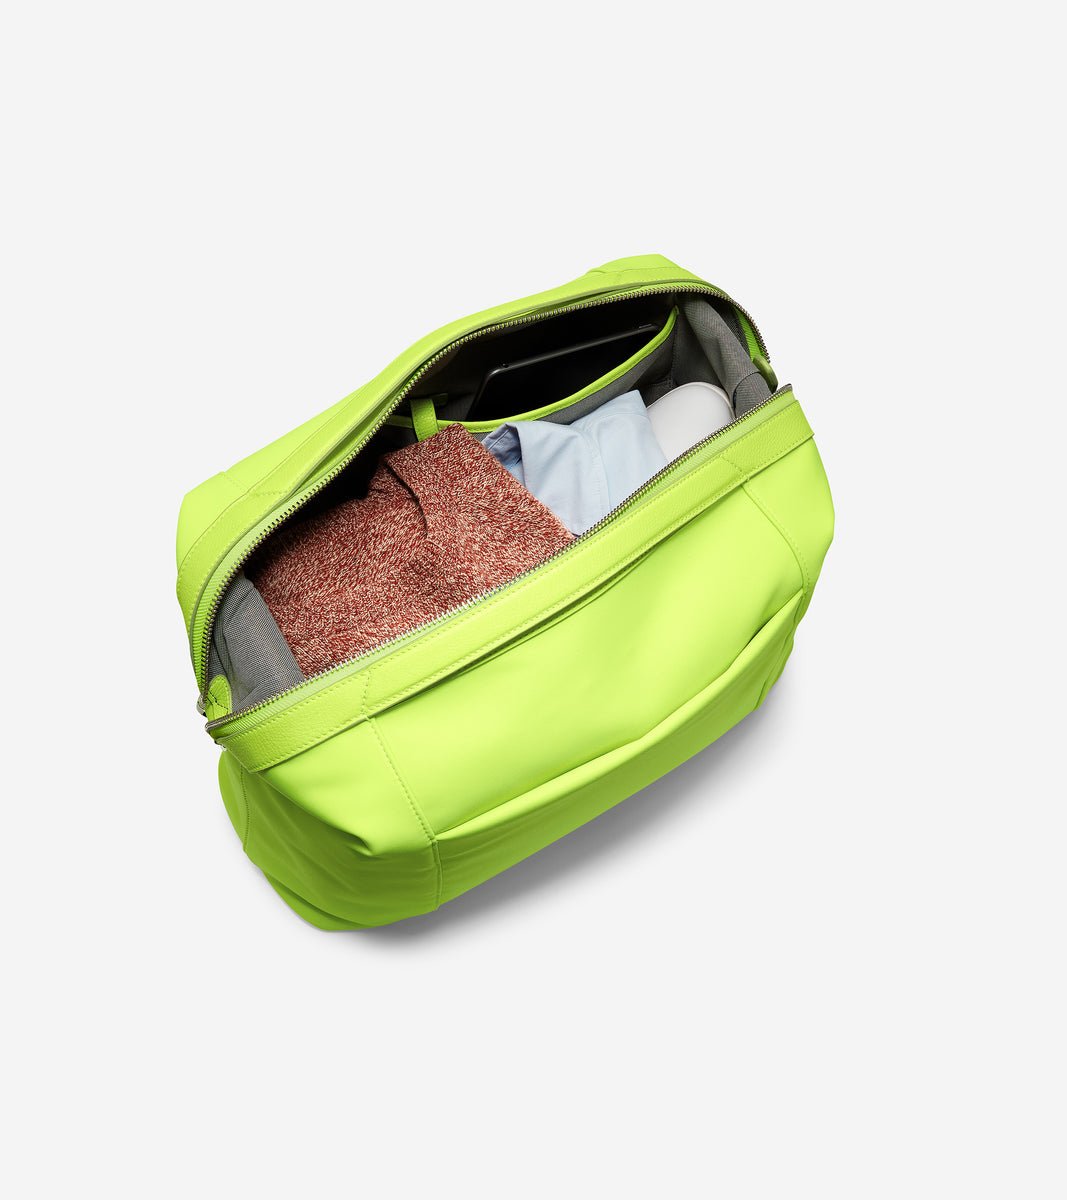 ColeHaan-Grand Ambition Weekender Duffle Bag-u04426-Lightening Green Neoprene